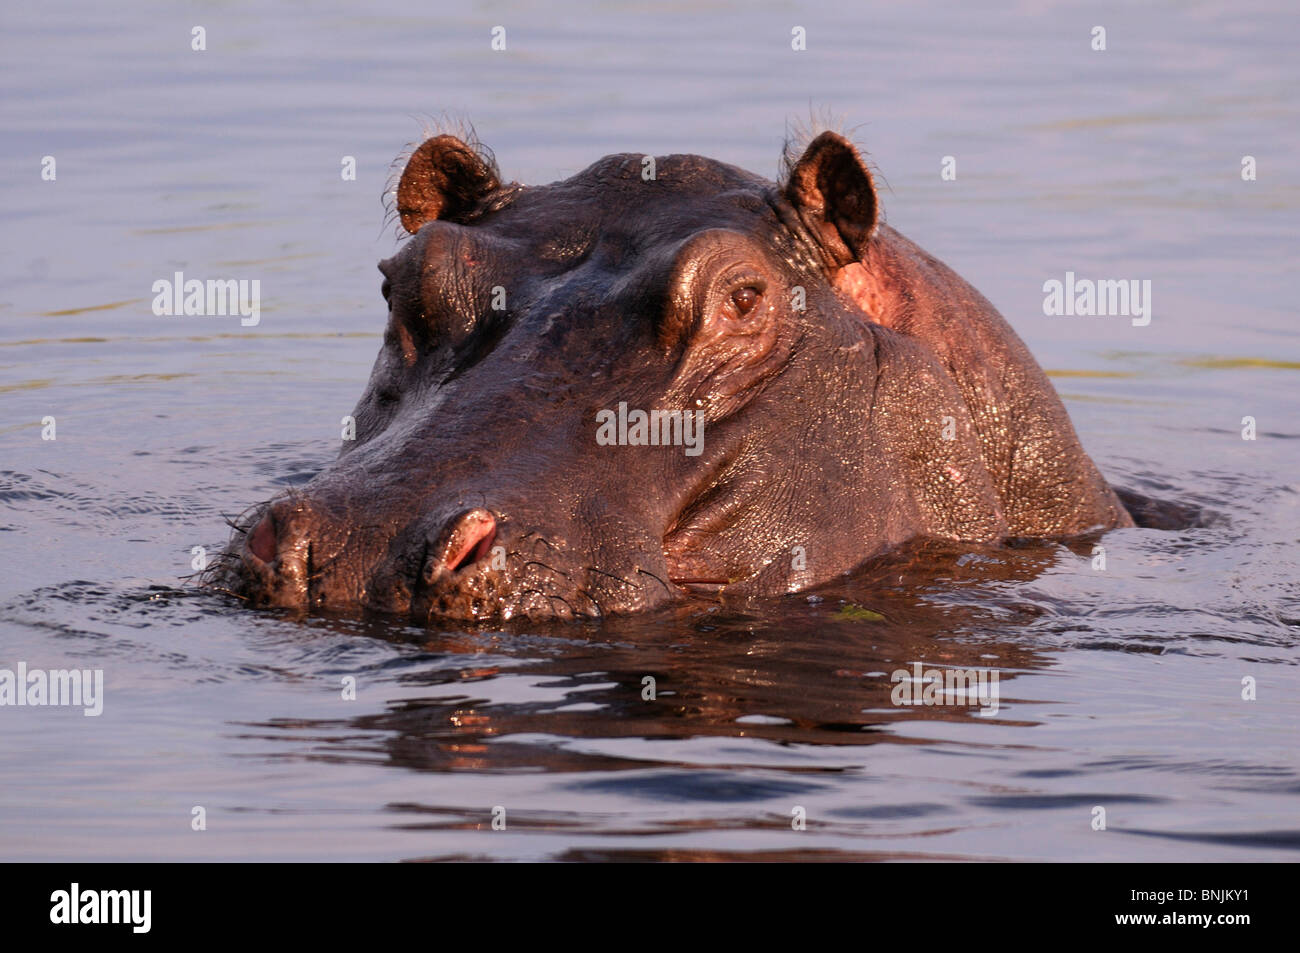 Cheval de rivière hippopotame hippopotame hippopotame eau animal cheval de rivière l'eau des animaux hippopotame amphibius Rivière Kwando Susuwe Island Banque D'Images